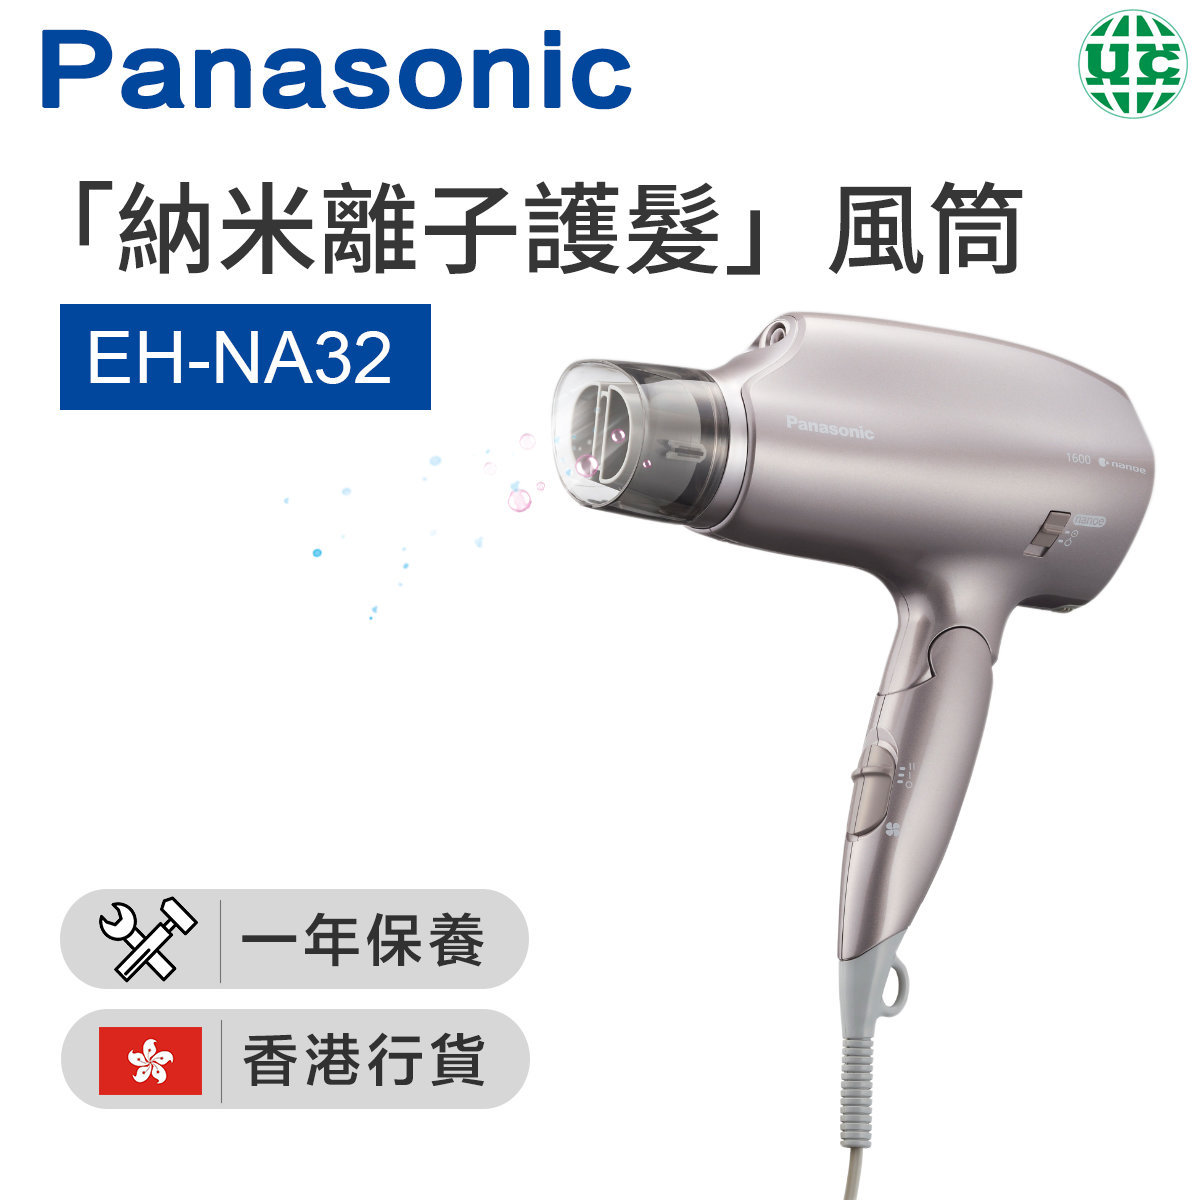 EH-NA32 Hair Dryer 1600W - Gray【Hong Kong License】